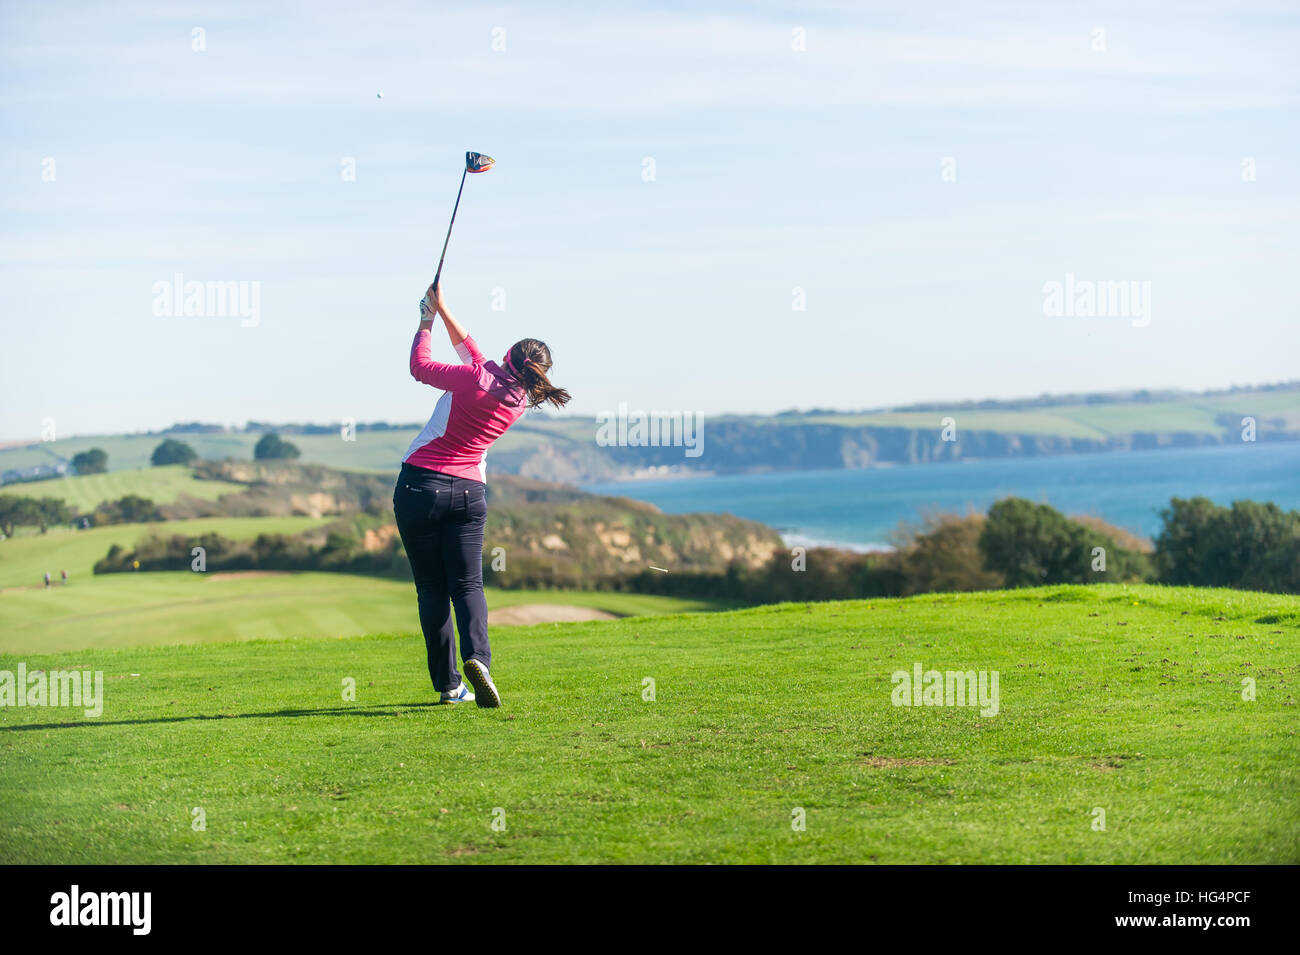 Ein junger weiblicher Golfer Abschlag am ersten Loch. Stockfoto